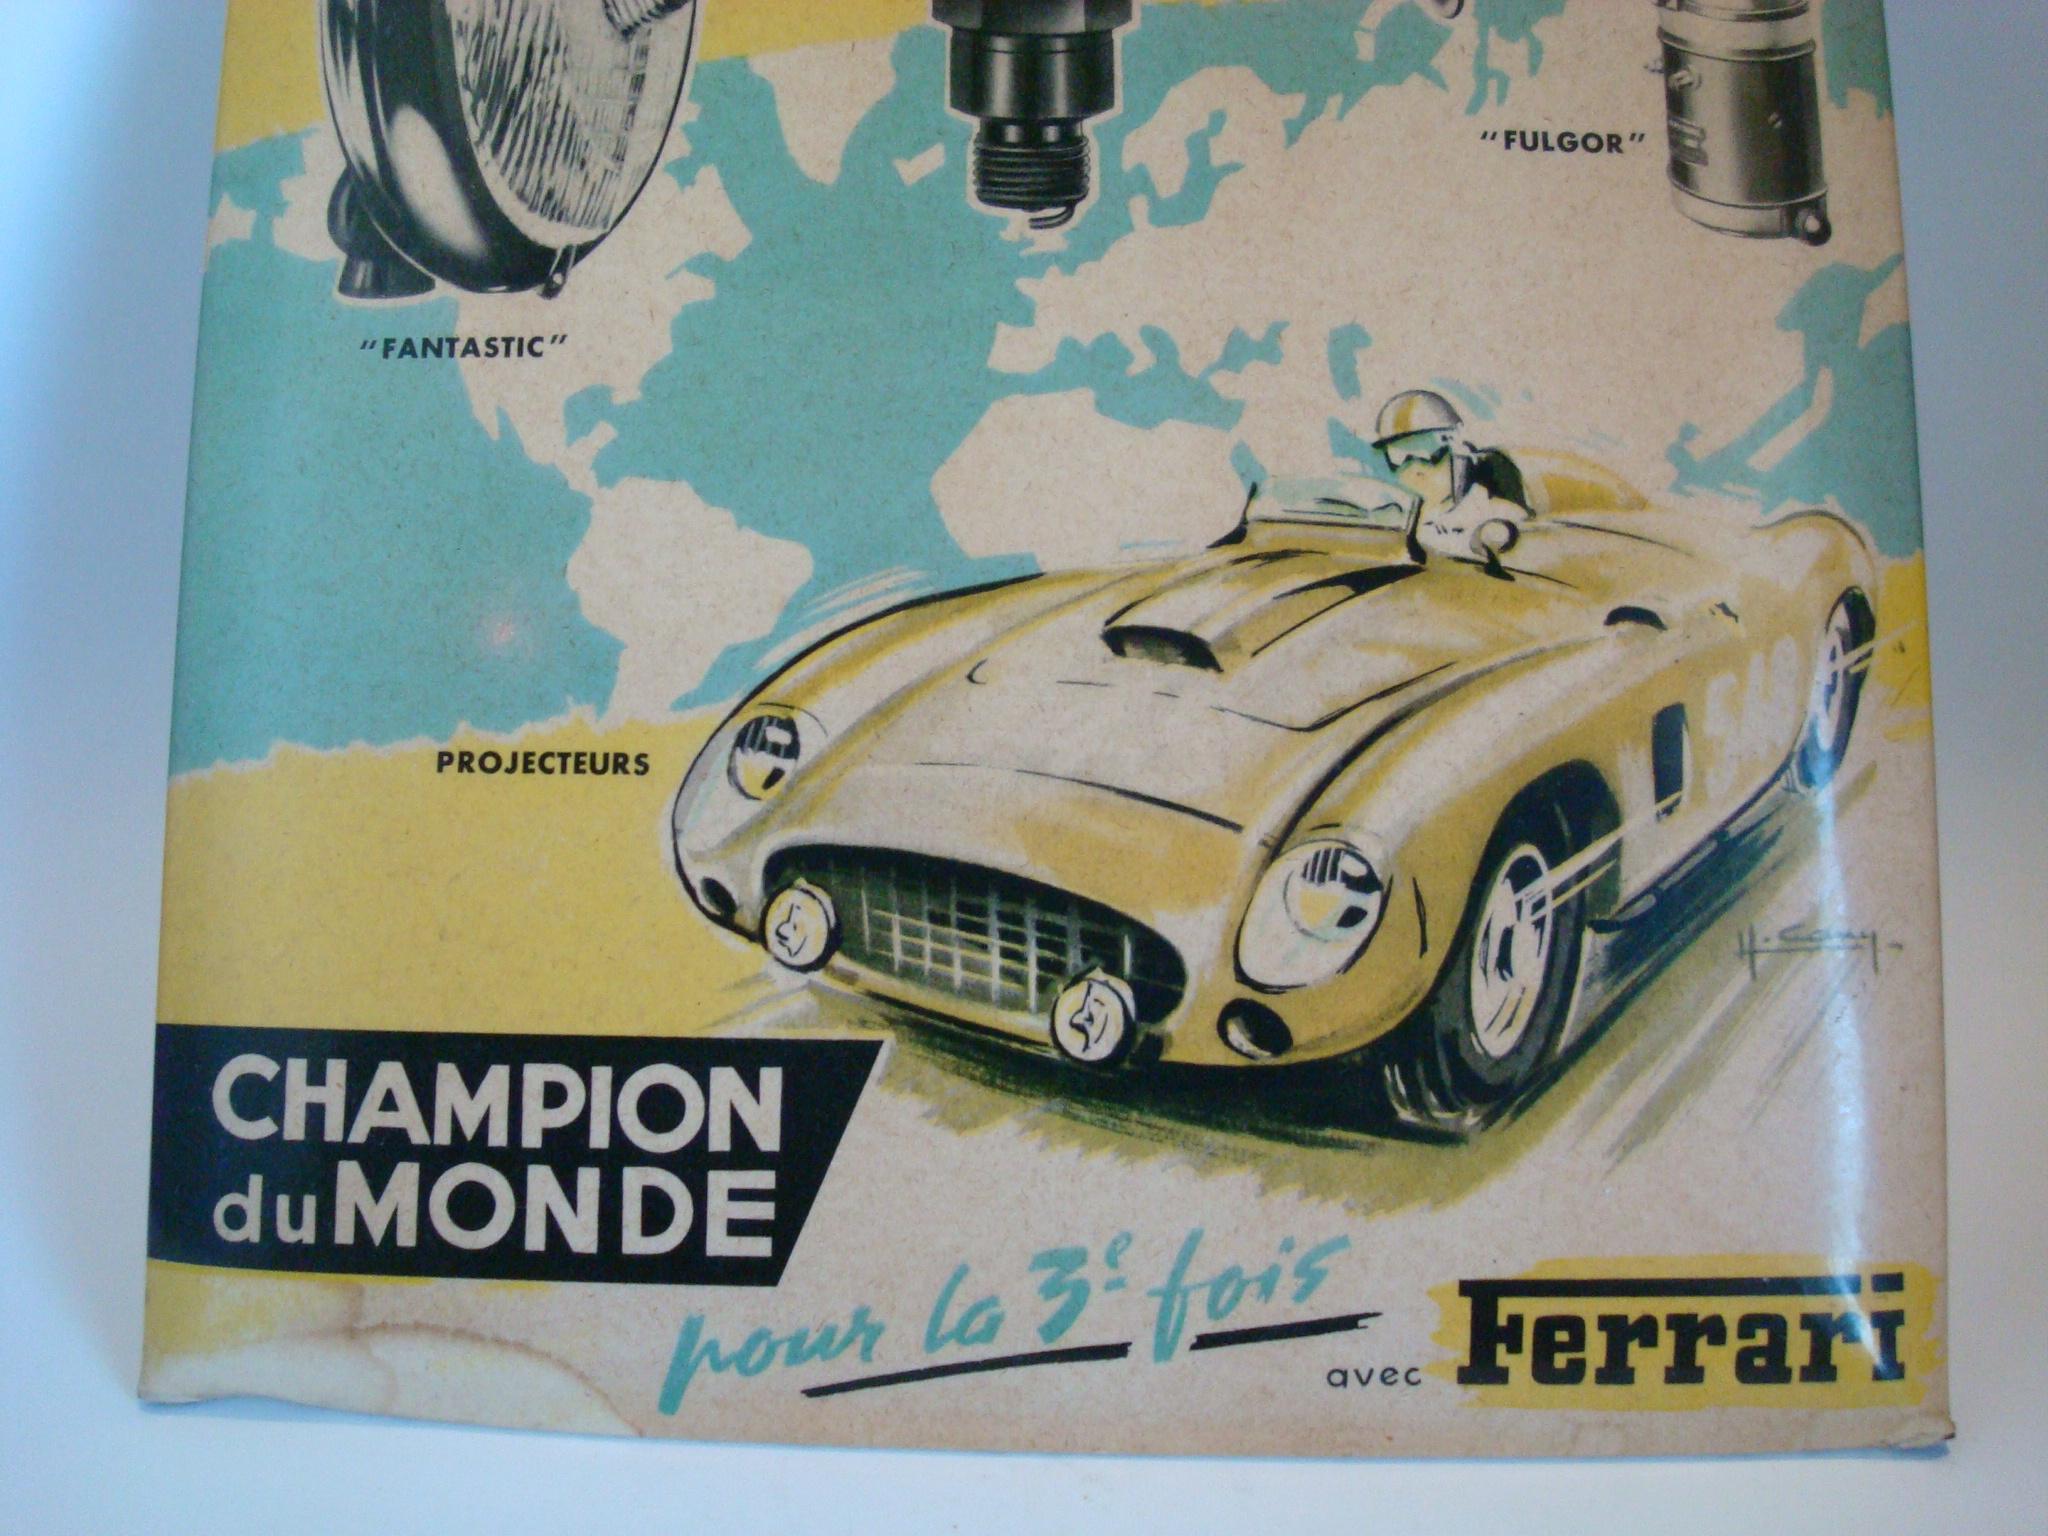 Marchal Ferrari Zubehörtheke Werbeschild, ca. 1950er Jahre, Farbe Litho Zelluloid über Karte zurück.
Das Zeichen wurde hergestellt, als Marchal (elektrische Autoteile einschließlich Scheinwerfer) Ferrari-Autos mit Zubehör versorgte. Sehr seltenes